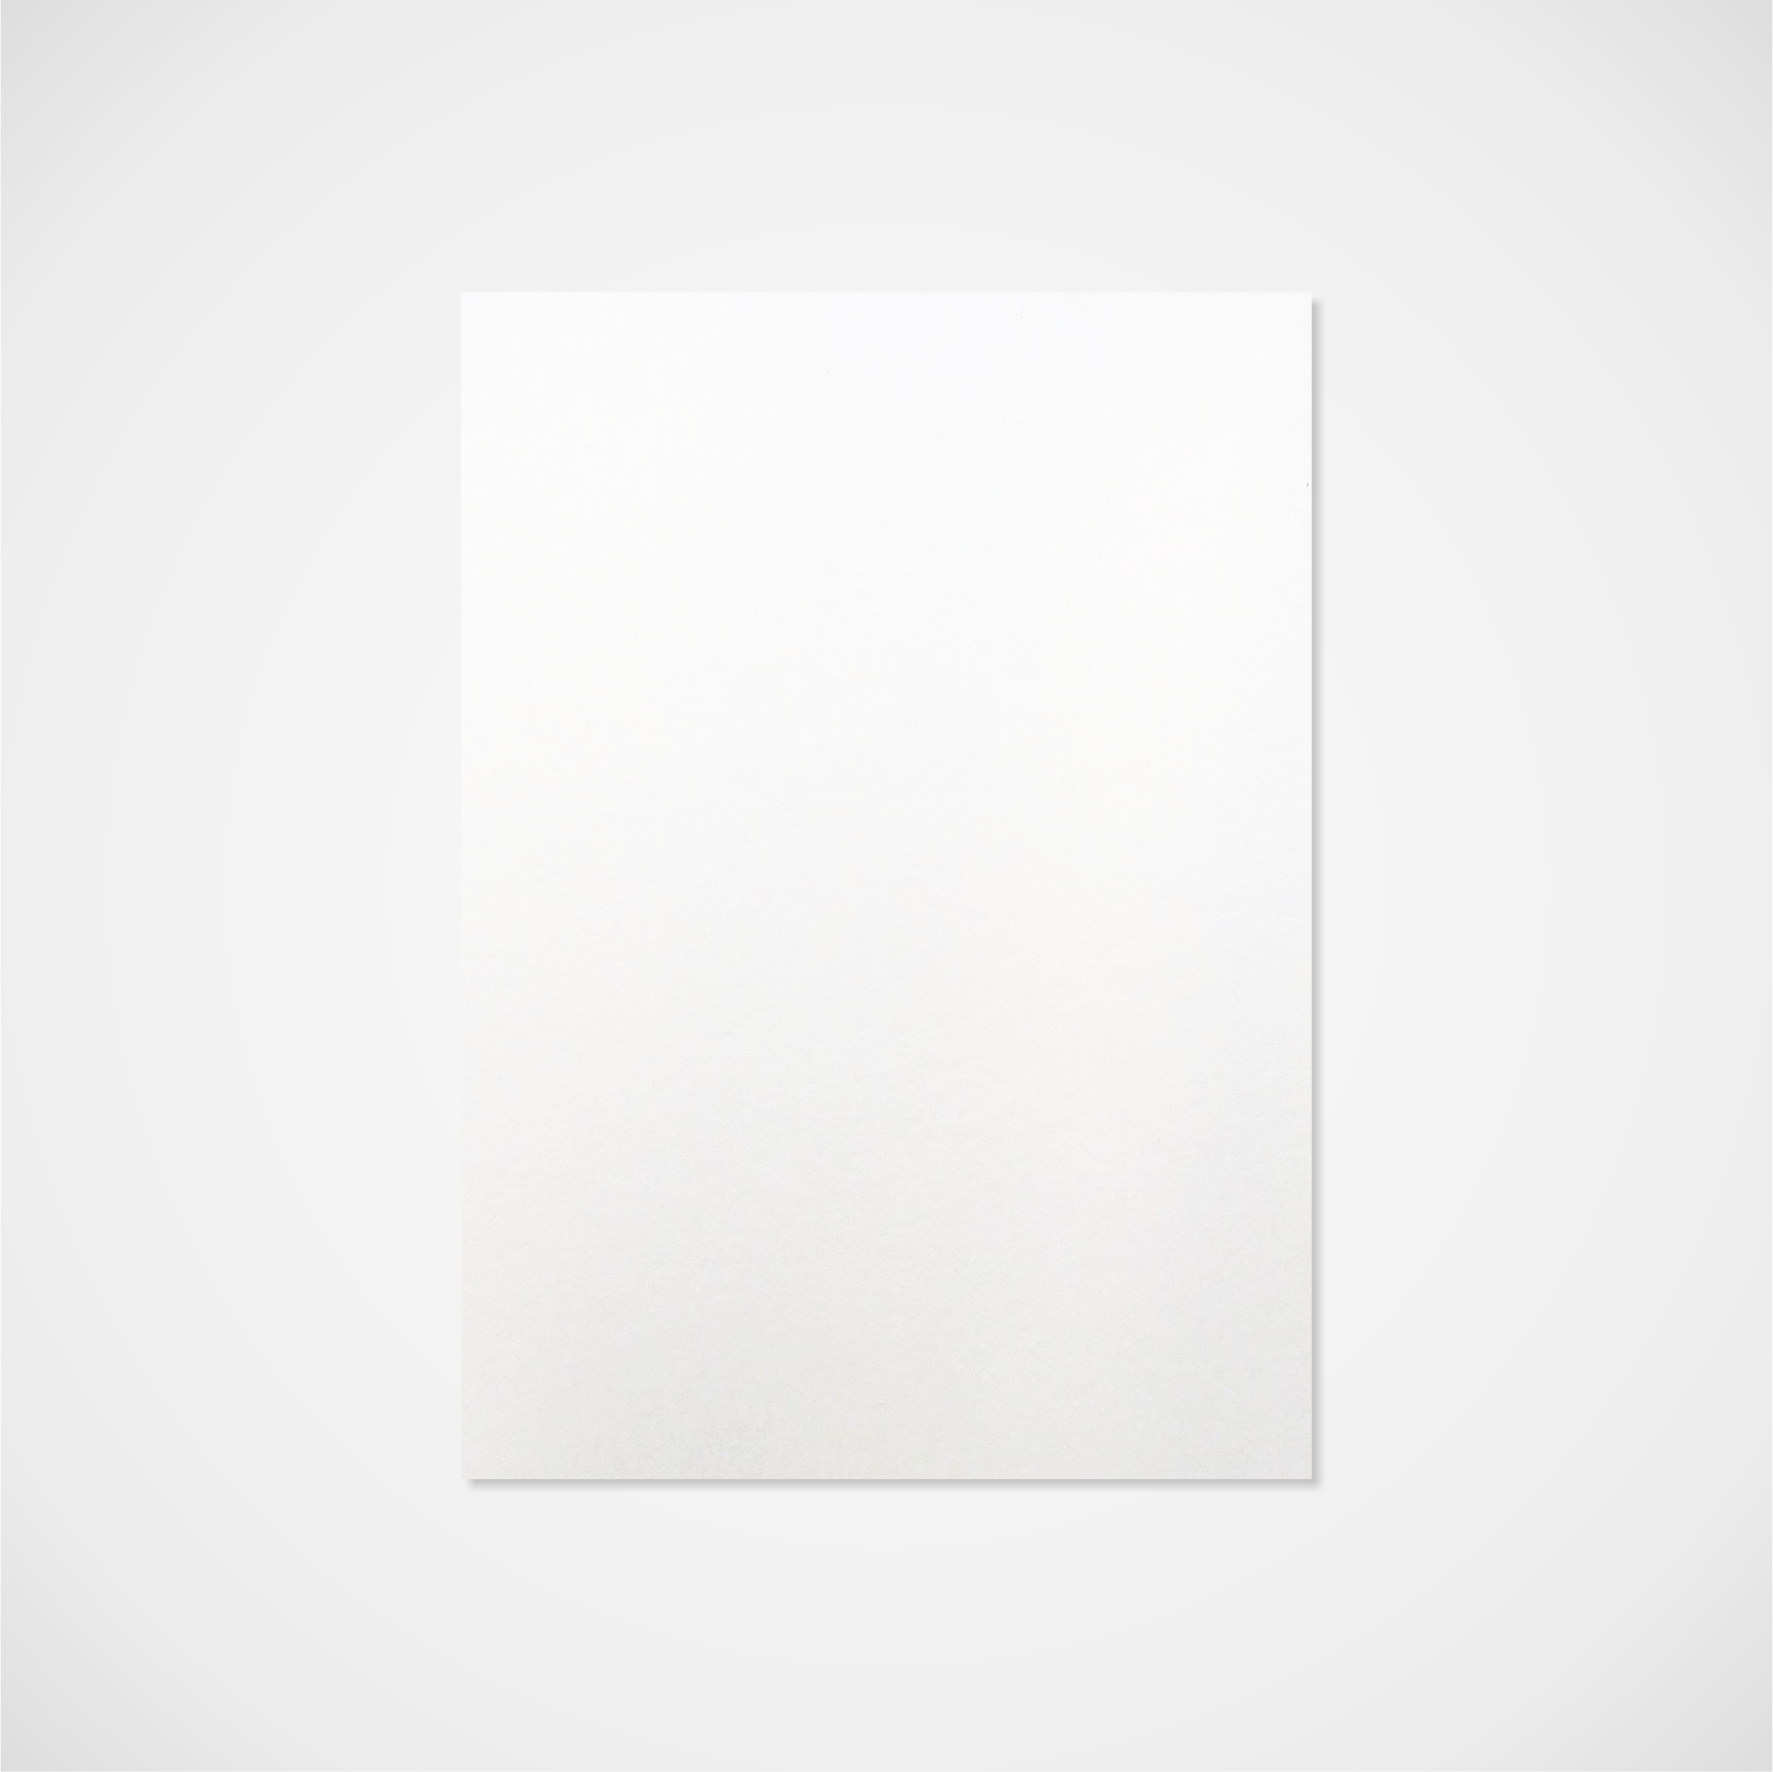 Titulní strana slohy – samostatně, jednobarevná – bílá perleť